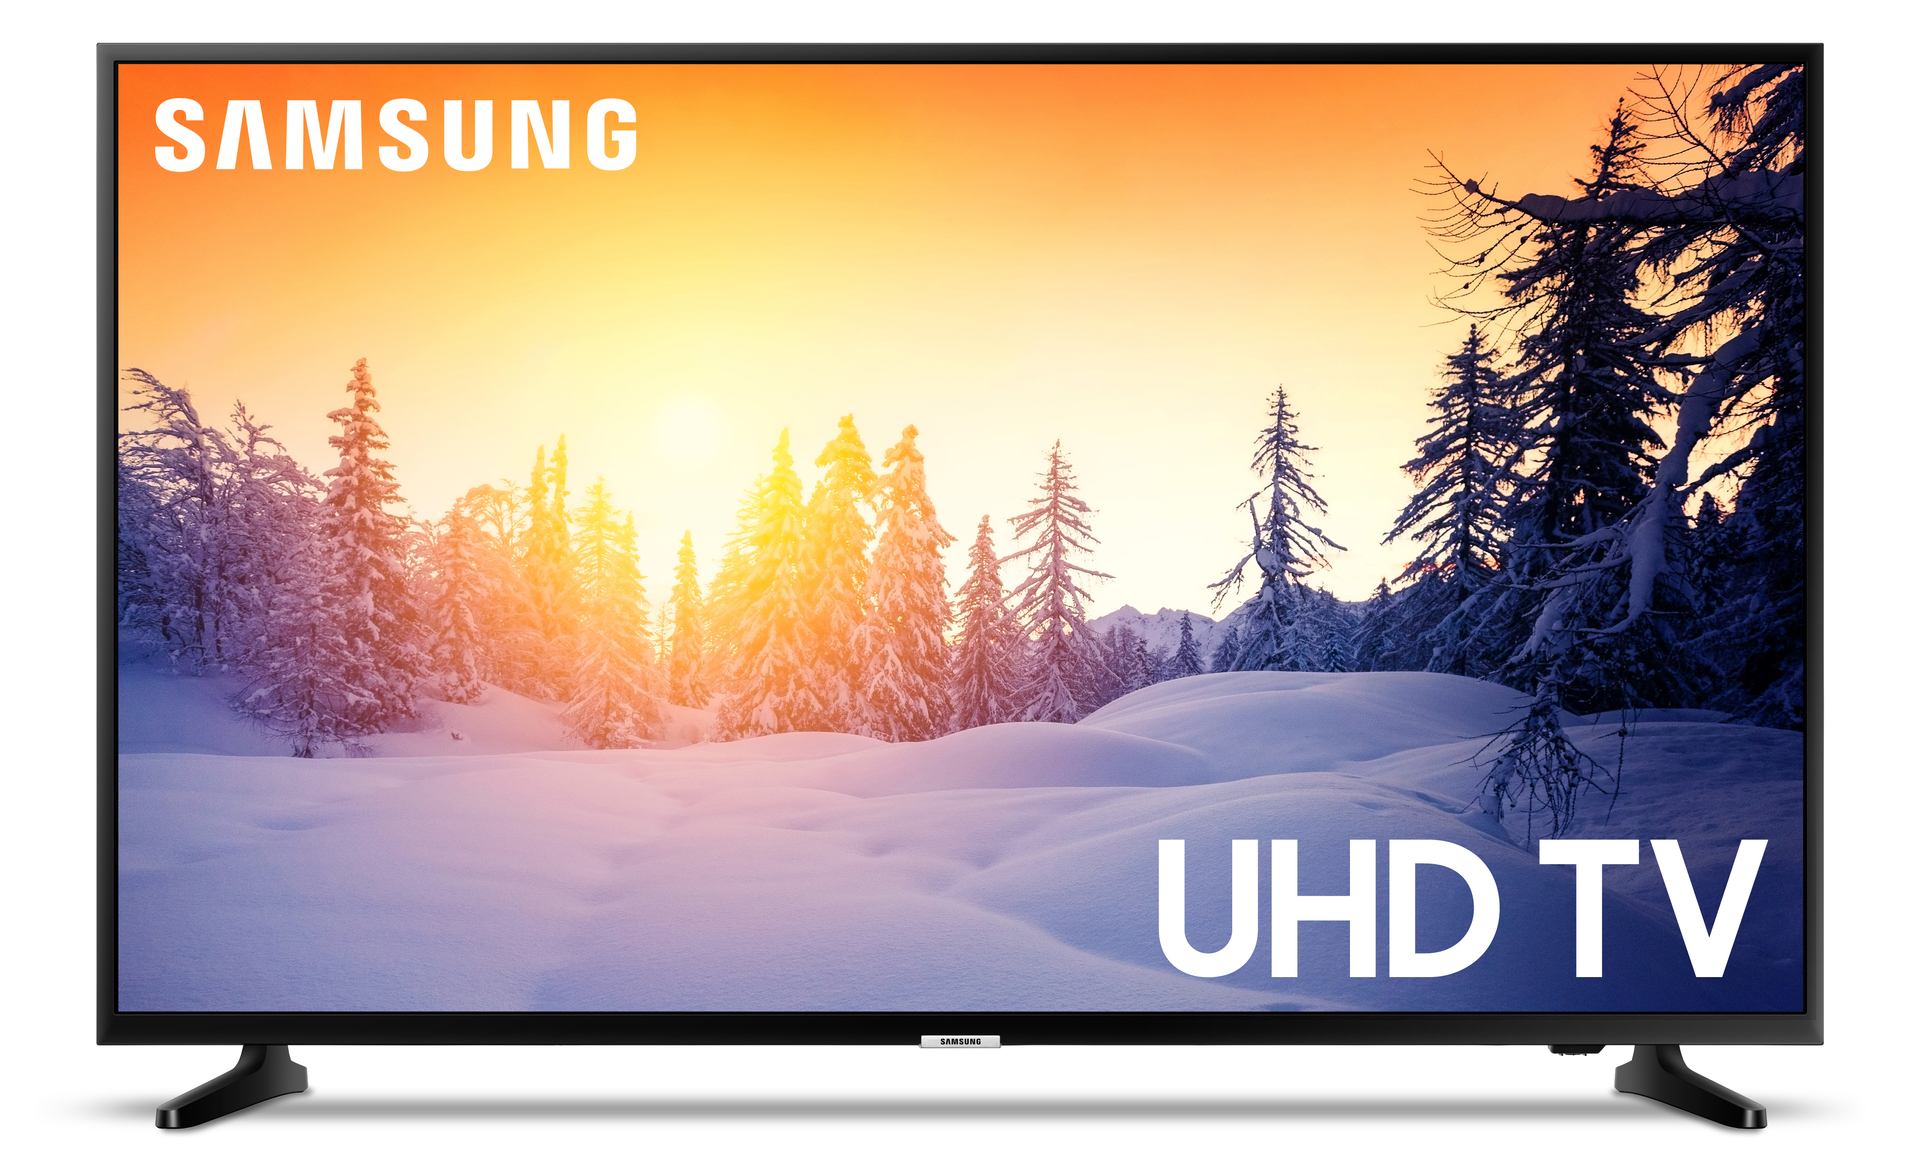 Samsung 43 inch led smart tv